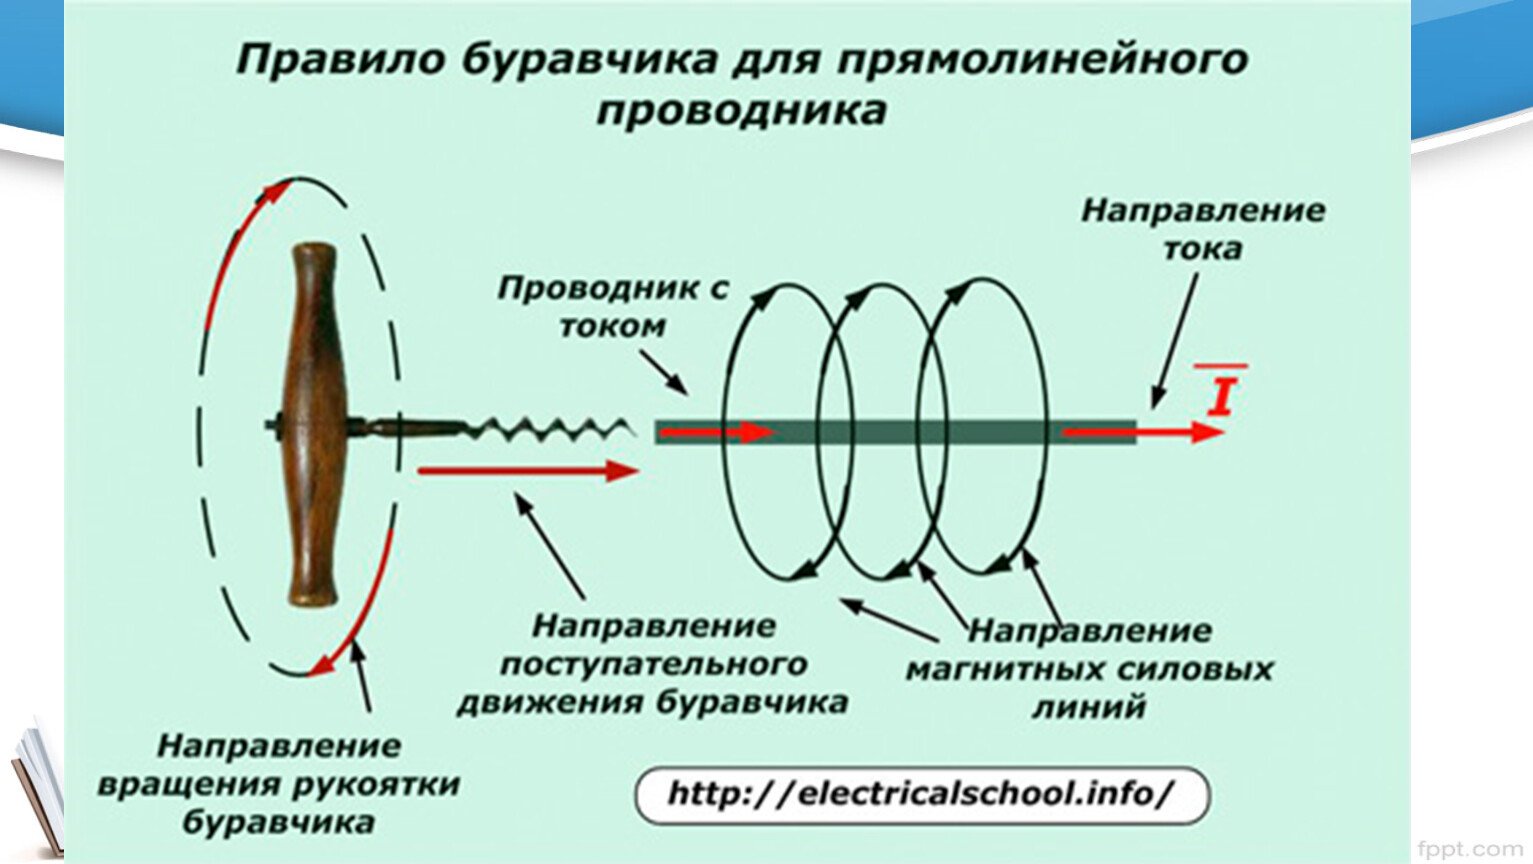 Если направление движения буравчика совпадает с направлением. Правило буравчика для прямолинейного проводника с током. Правило буравчика для прямолинейного проводника. Направление тока по правилу буравчика. Правило буравчика для проводника с током.